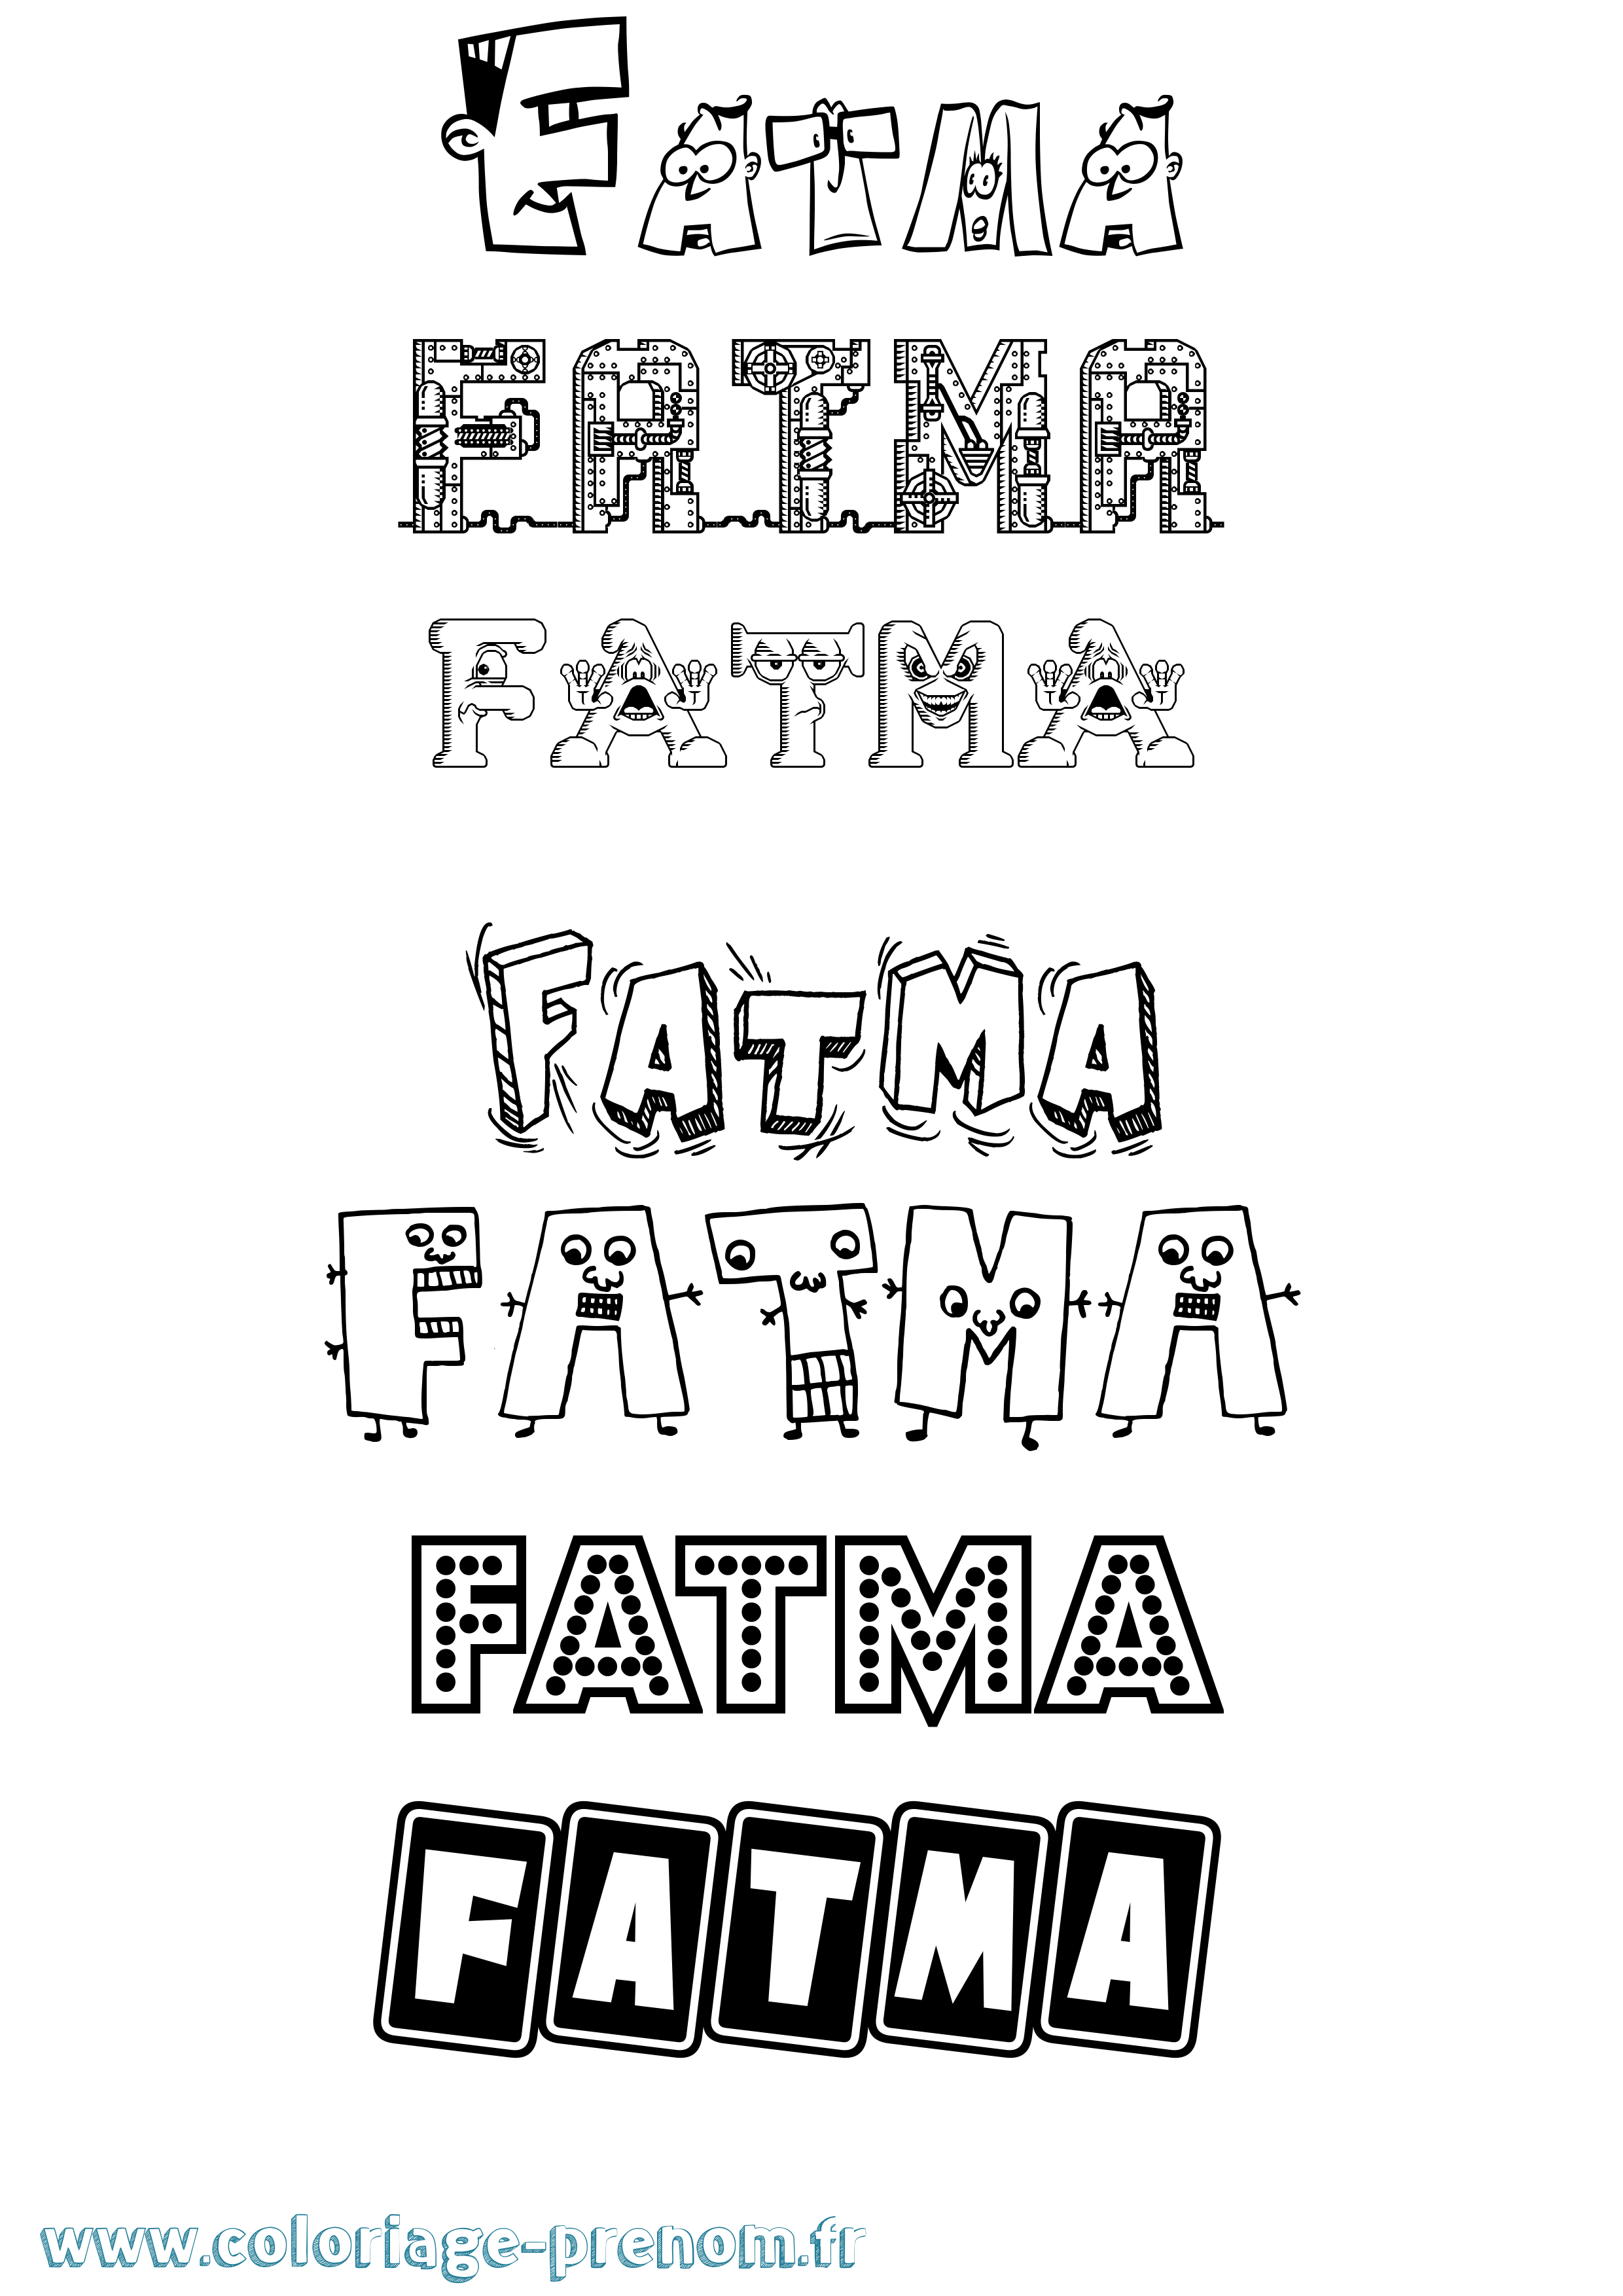 Coloriage prénom Fatma